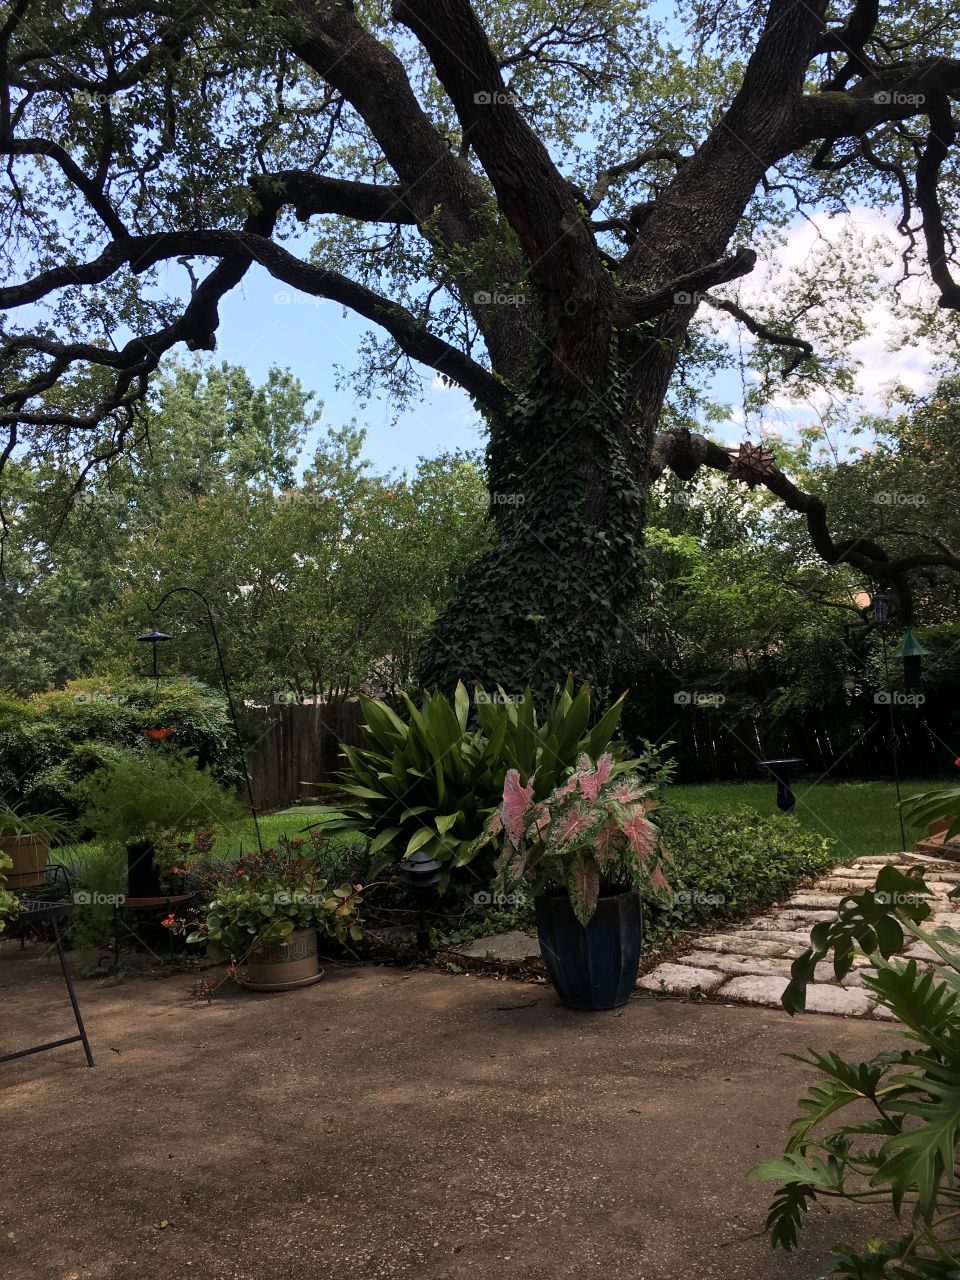 Summer in the backyard, 2017, Austin, TX